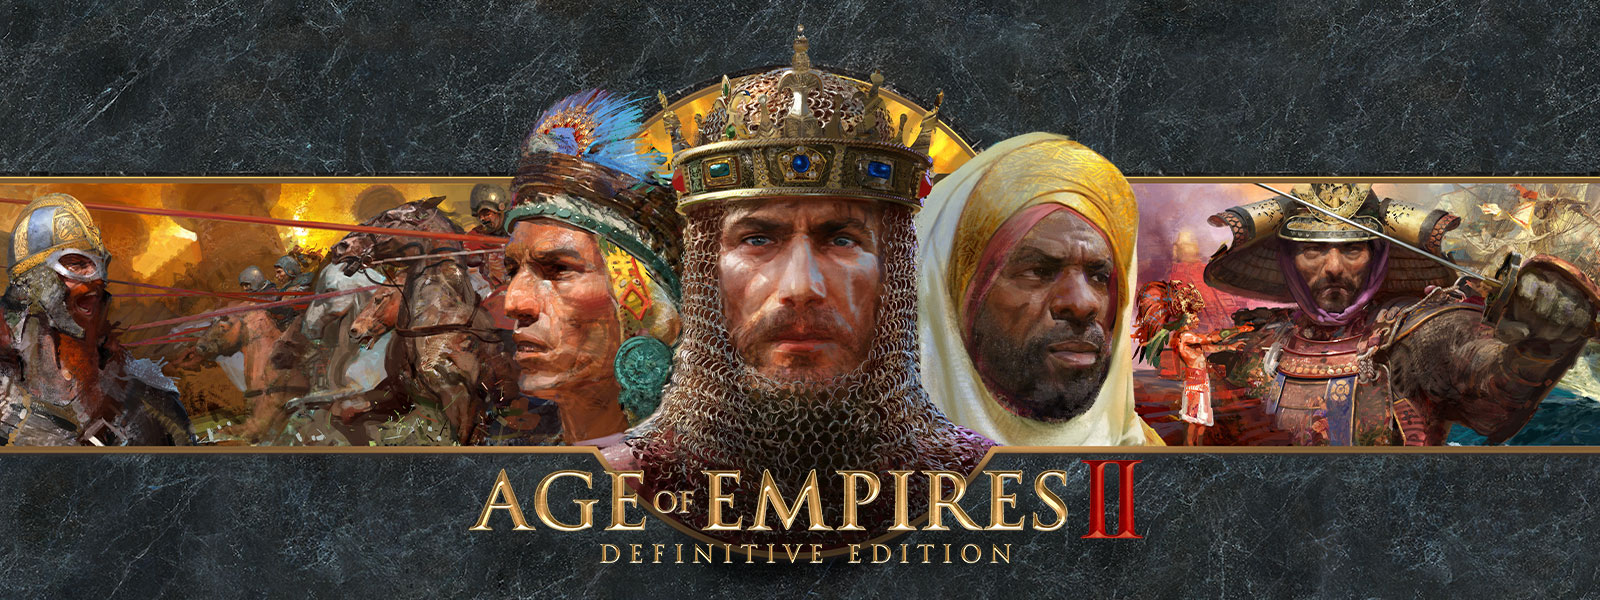 Age of Empires II: Definitive Edition-Logo vor grauem Schiefer mit Kriegsführer*innen und ihren Armeen